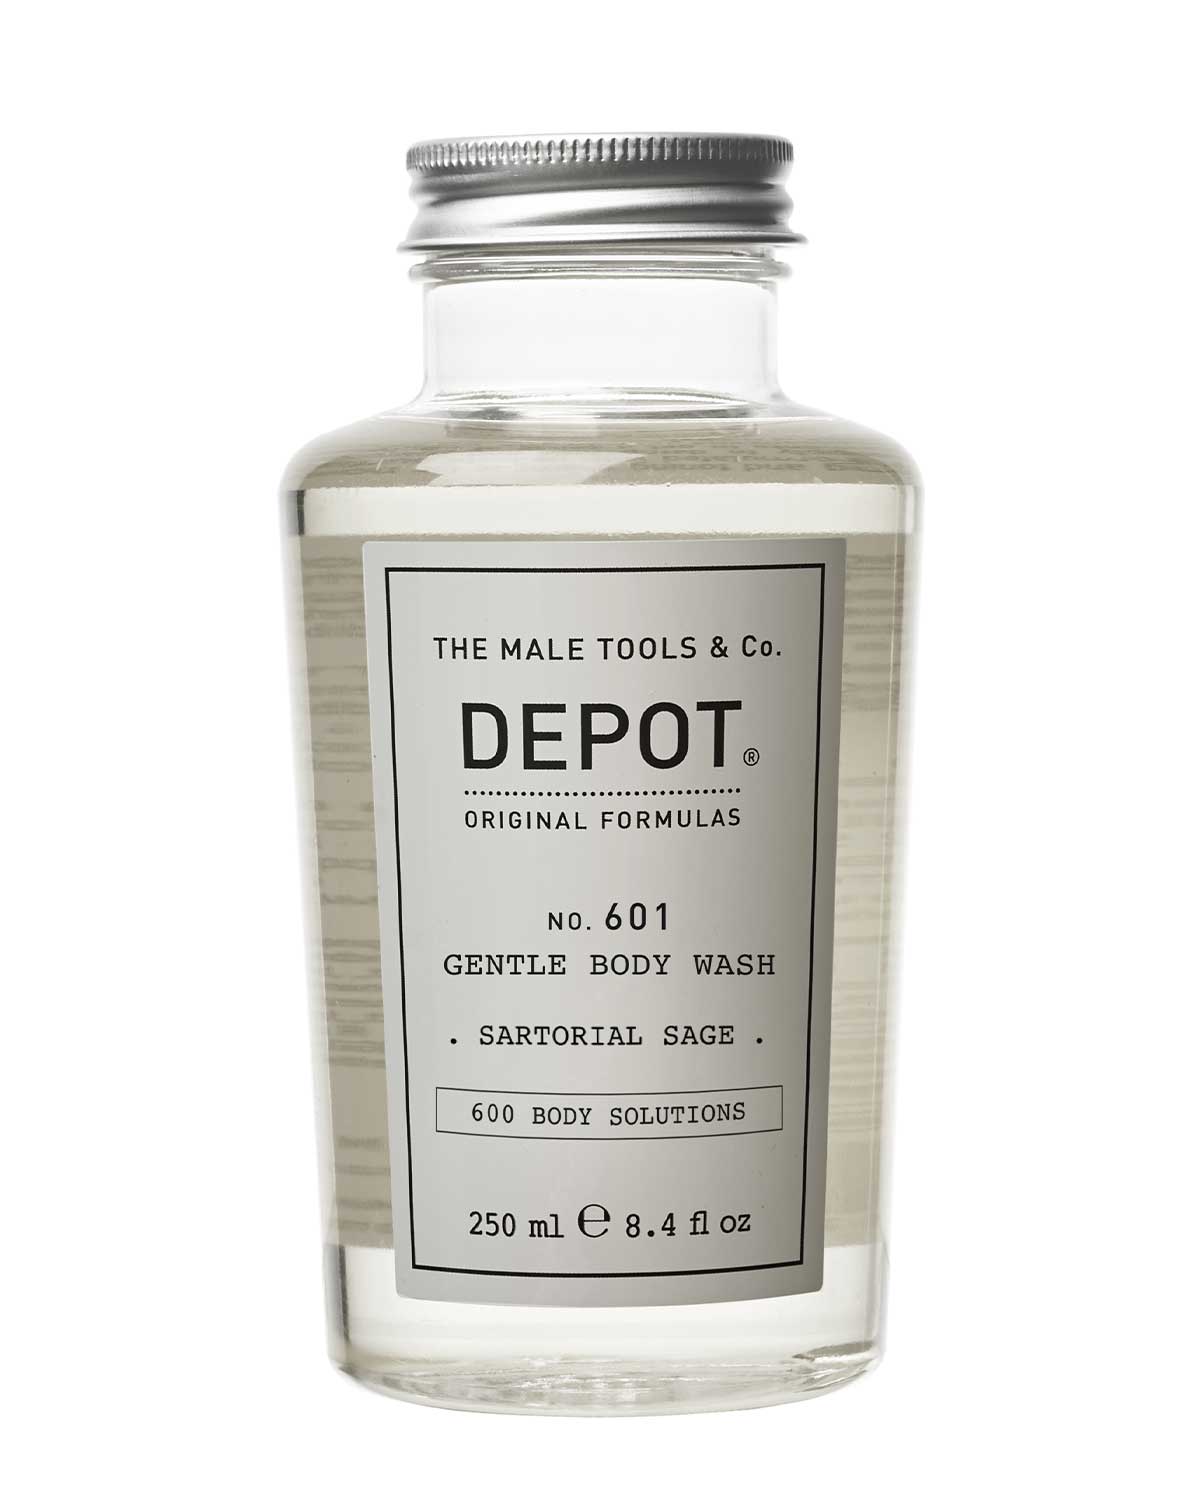 depot-gentle-body-wash-sartorial-sage-250-ml